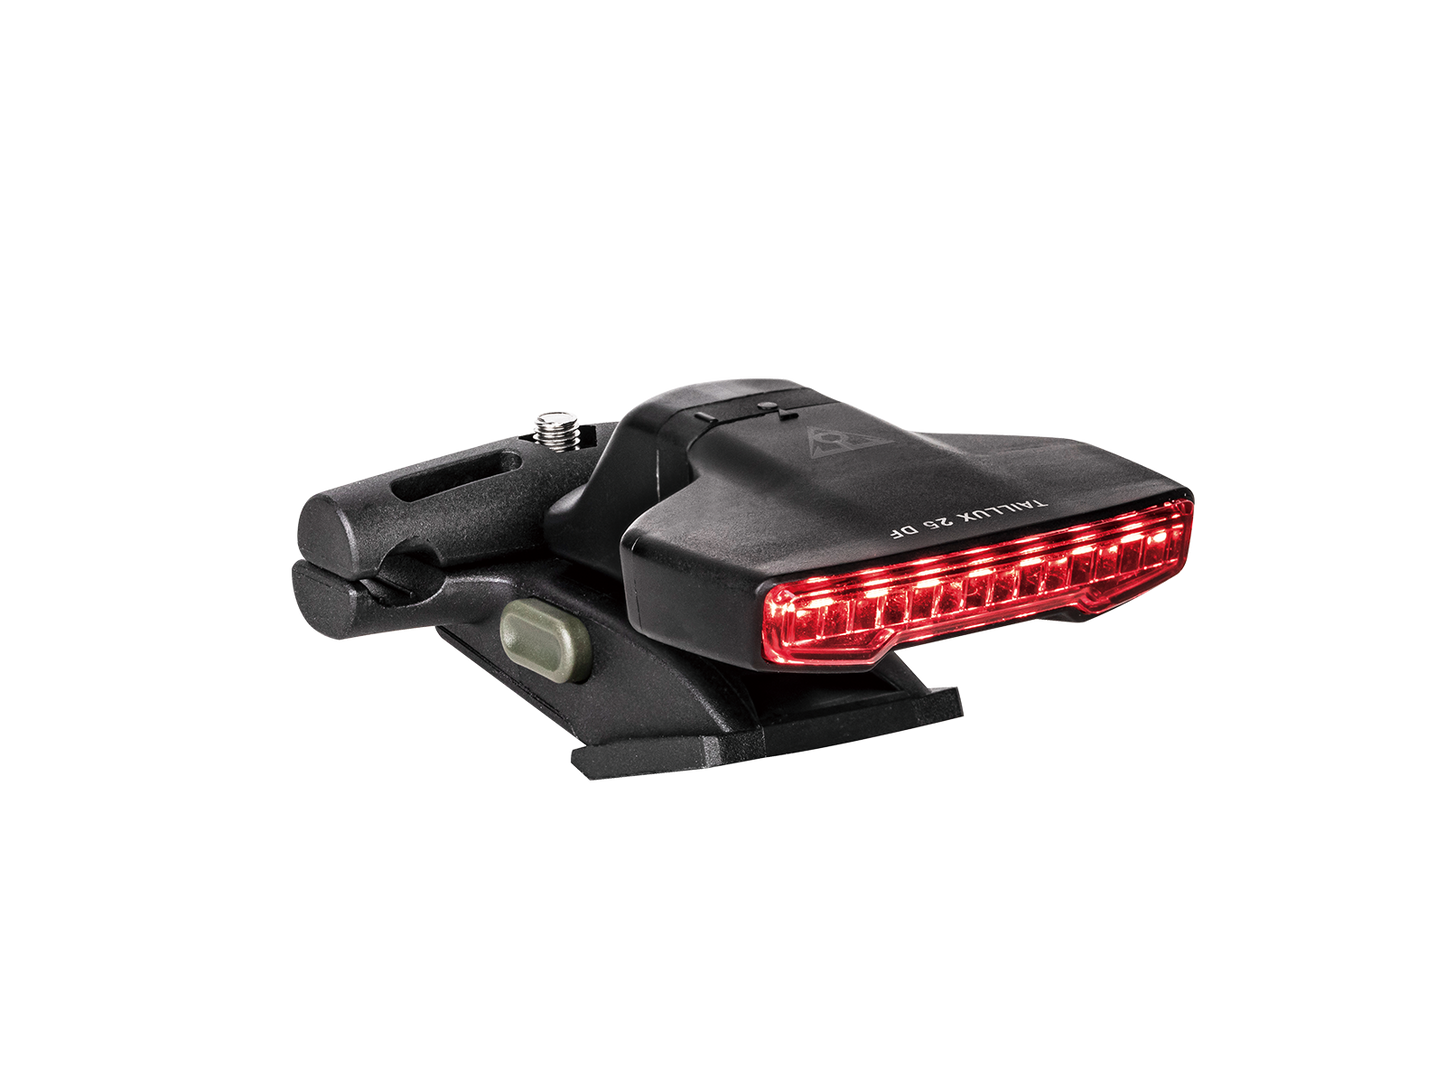 Topeak Taillux 25 DF USB 叉電尾燈/ Topeak Taillux 25 DF USB Rear Light